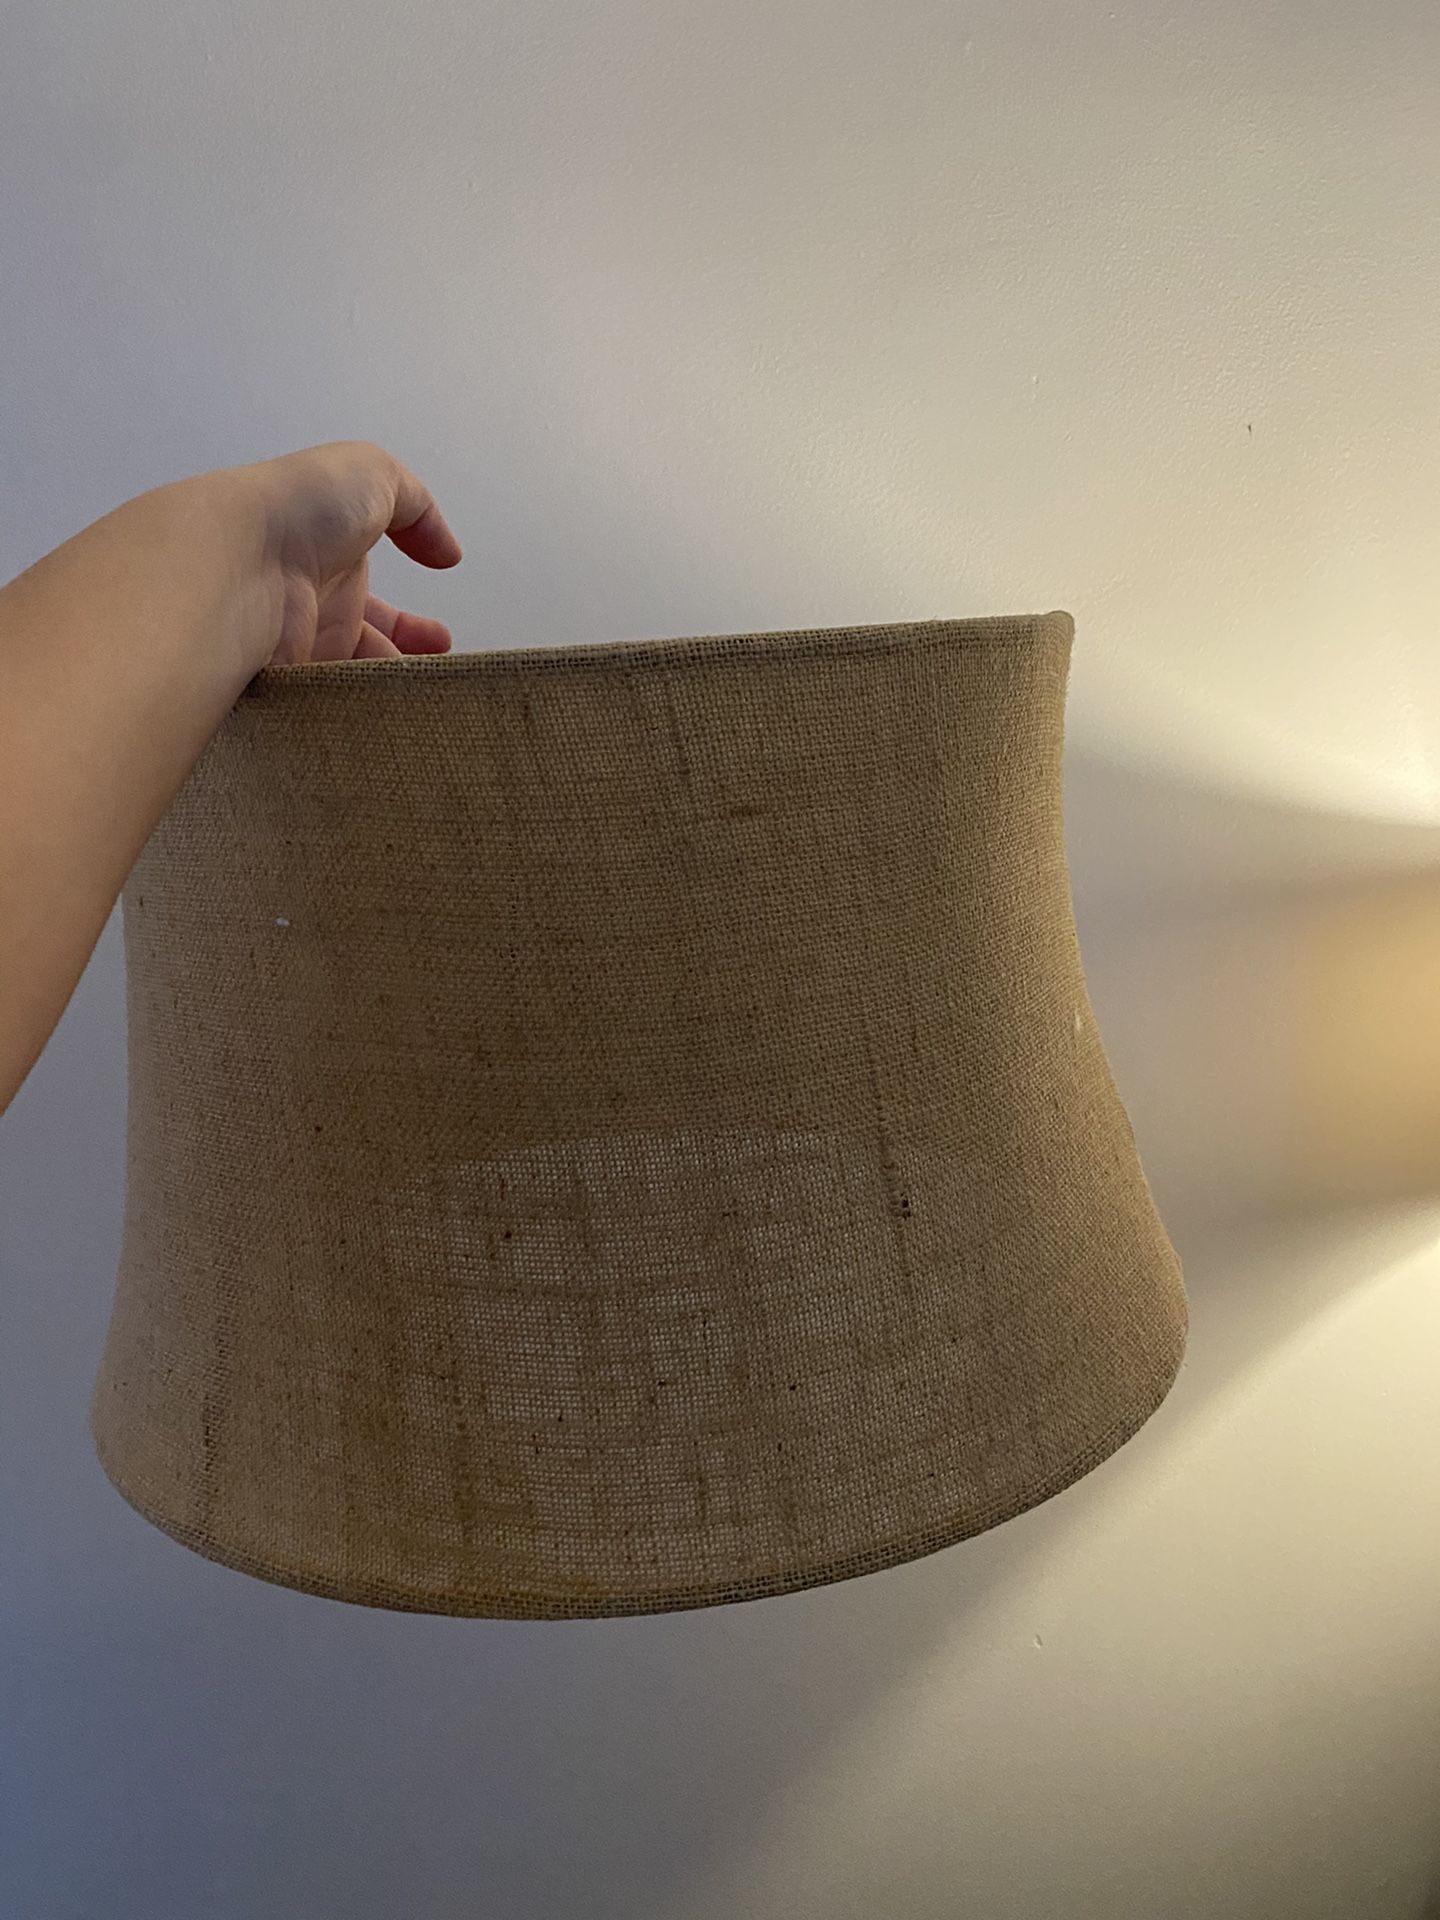 Large pottery barn lamp shade